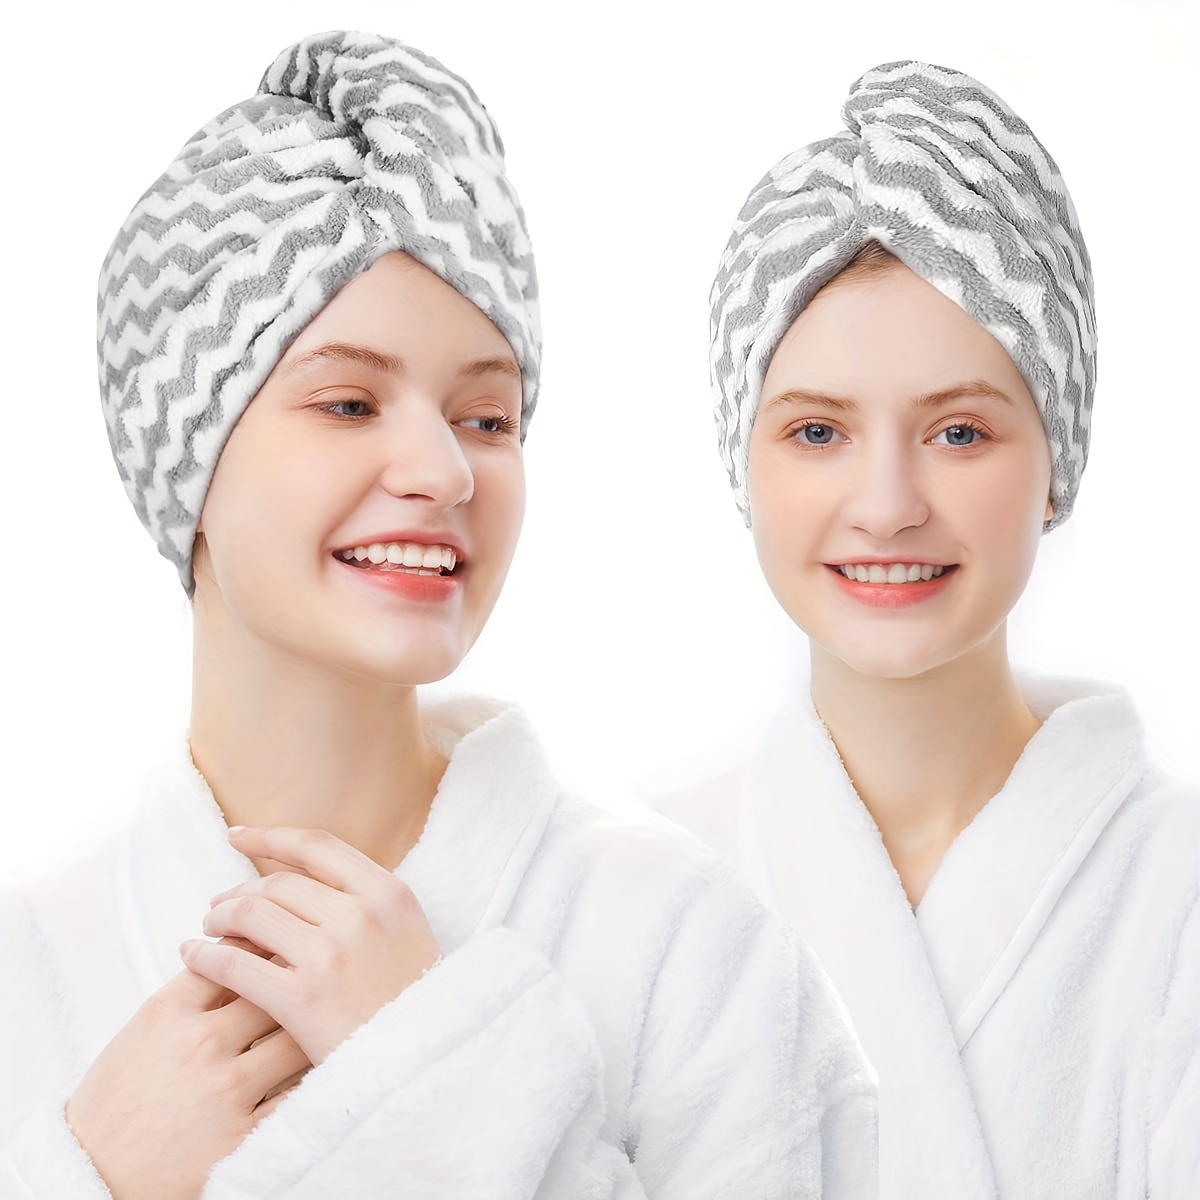 Serviette à cheveux, 2 serviettes de séchage des cheveux avec boutons,  serviette à cheveux en microfibre super absorbante, cheveux secs